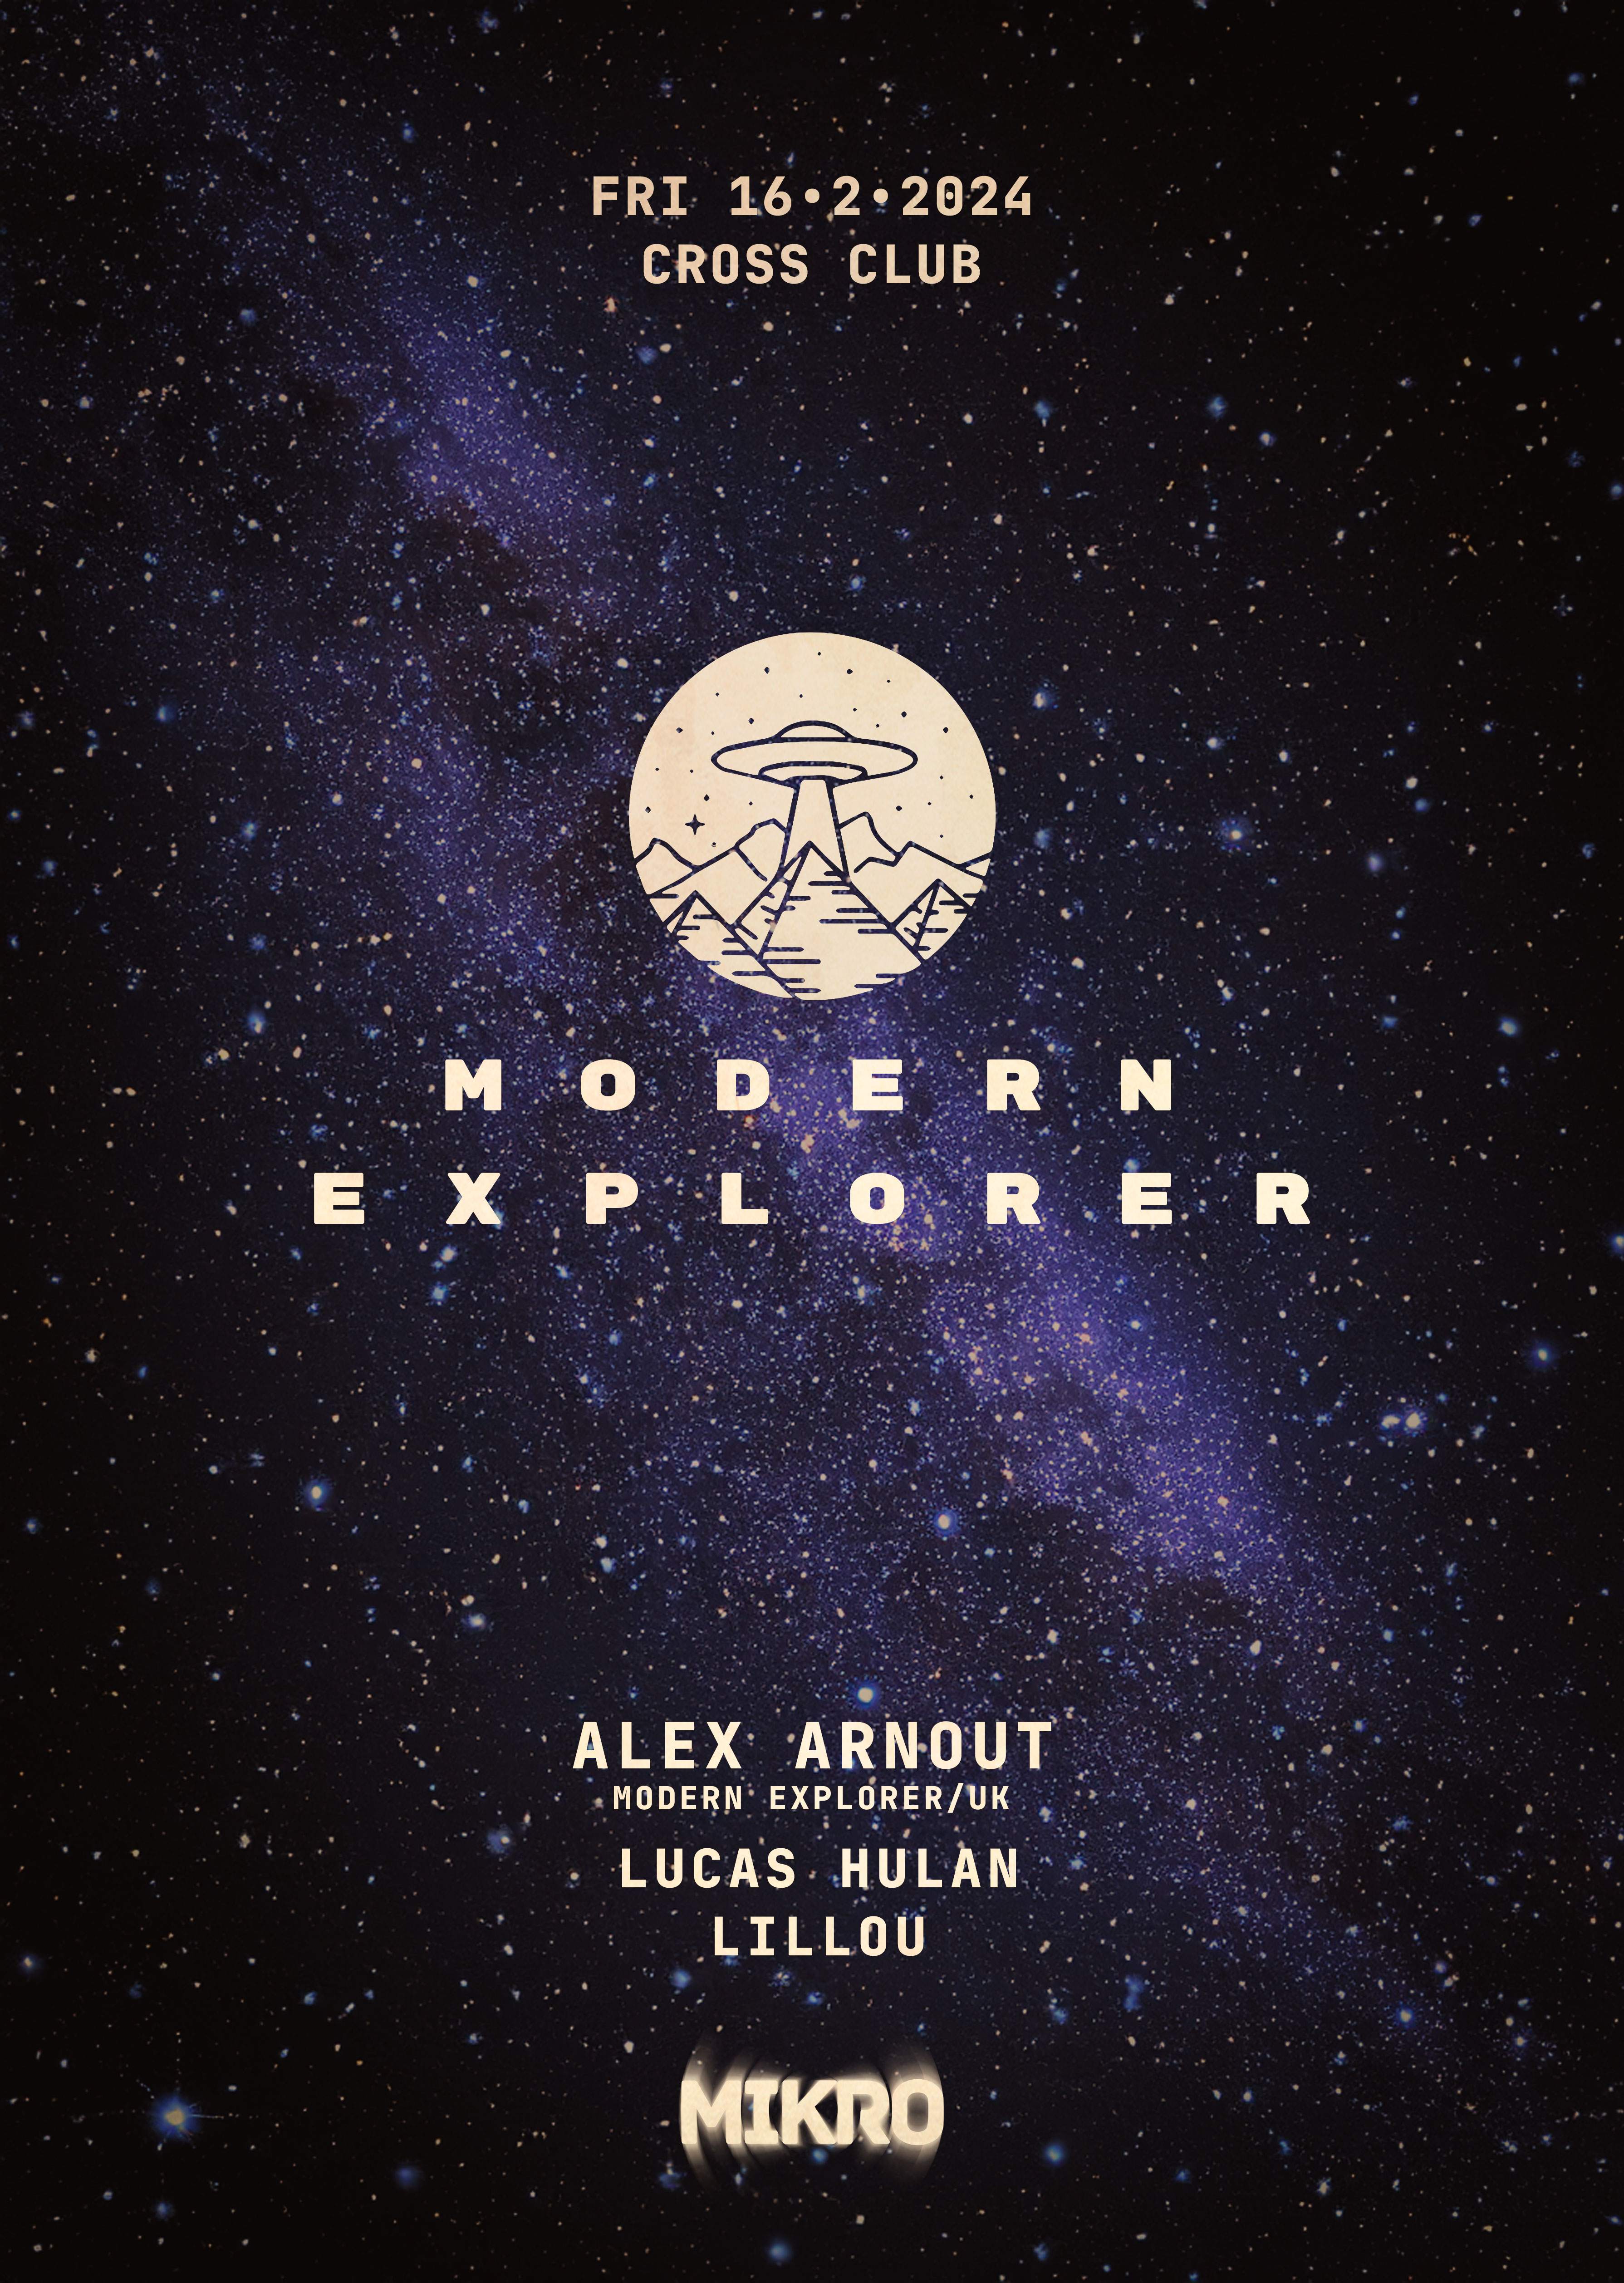 Modern Explorer with Alex Arnout - フライヤー表